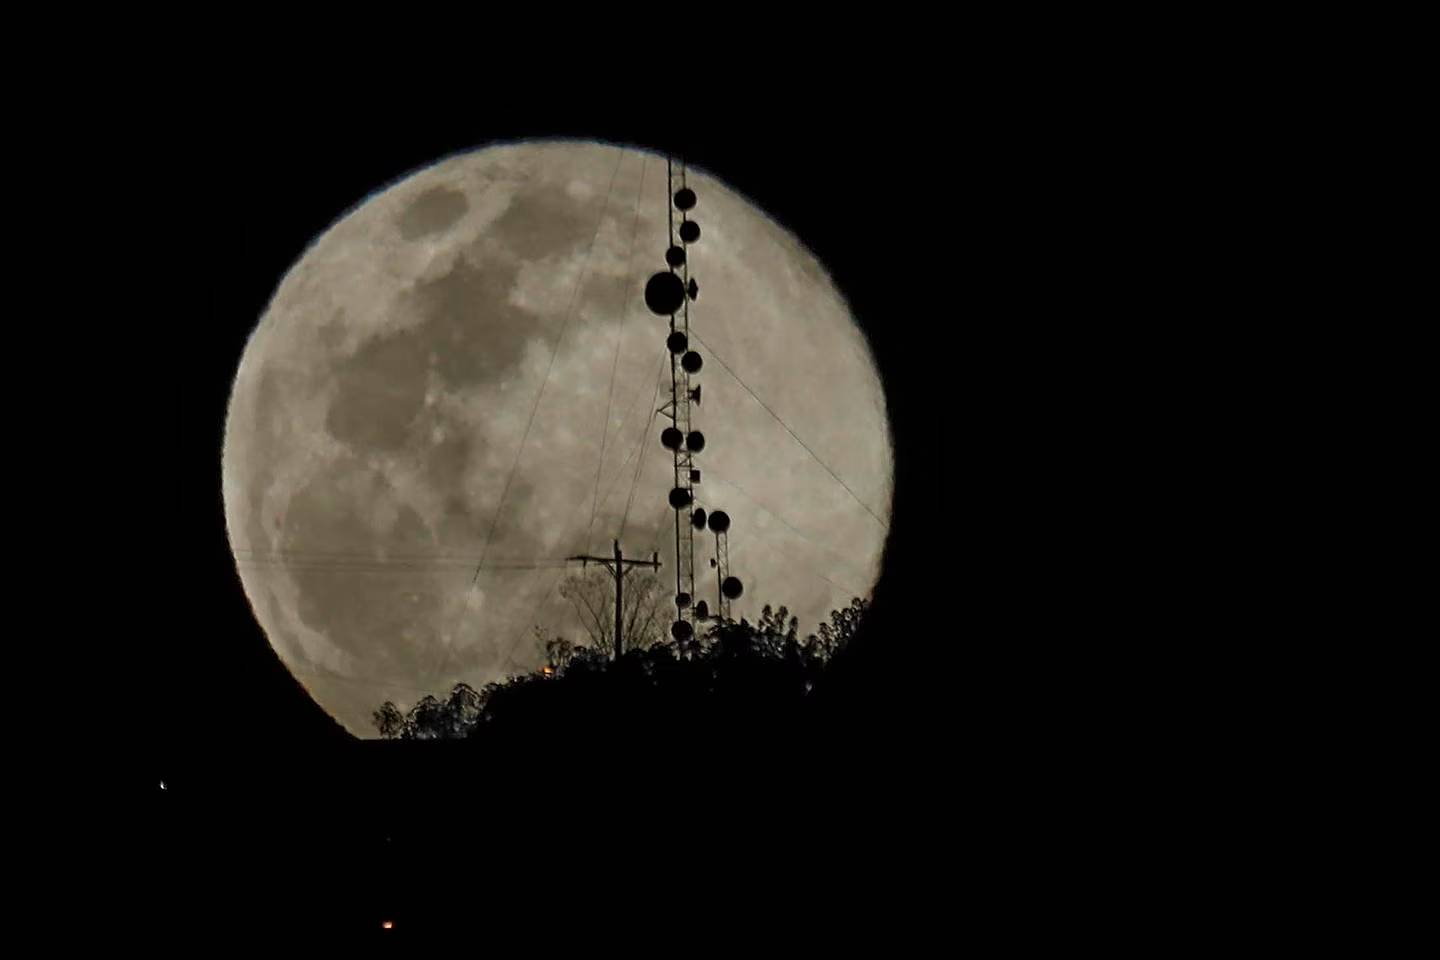 La superluna o luna en perigeo se podrá apreciar este 30 de agosto. Tamaño de la luna se verá más grande por la cercanía que tendrá el astro con la Tierra.  Fotografía: Rafael Pacheco